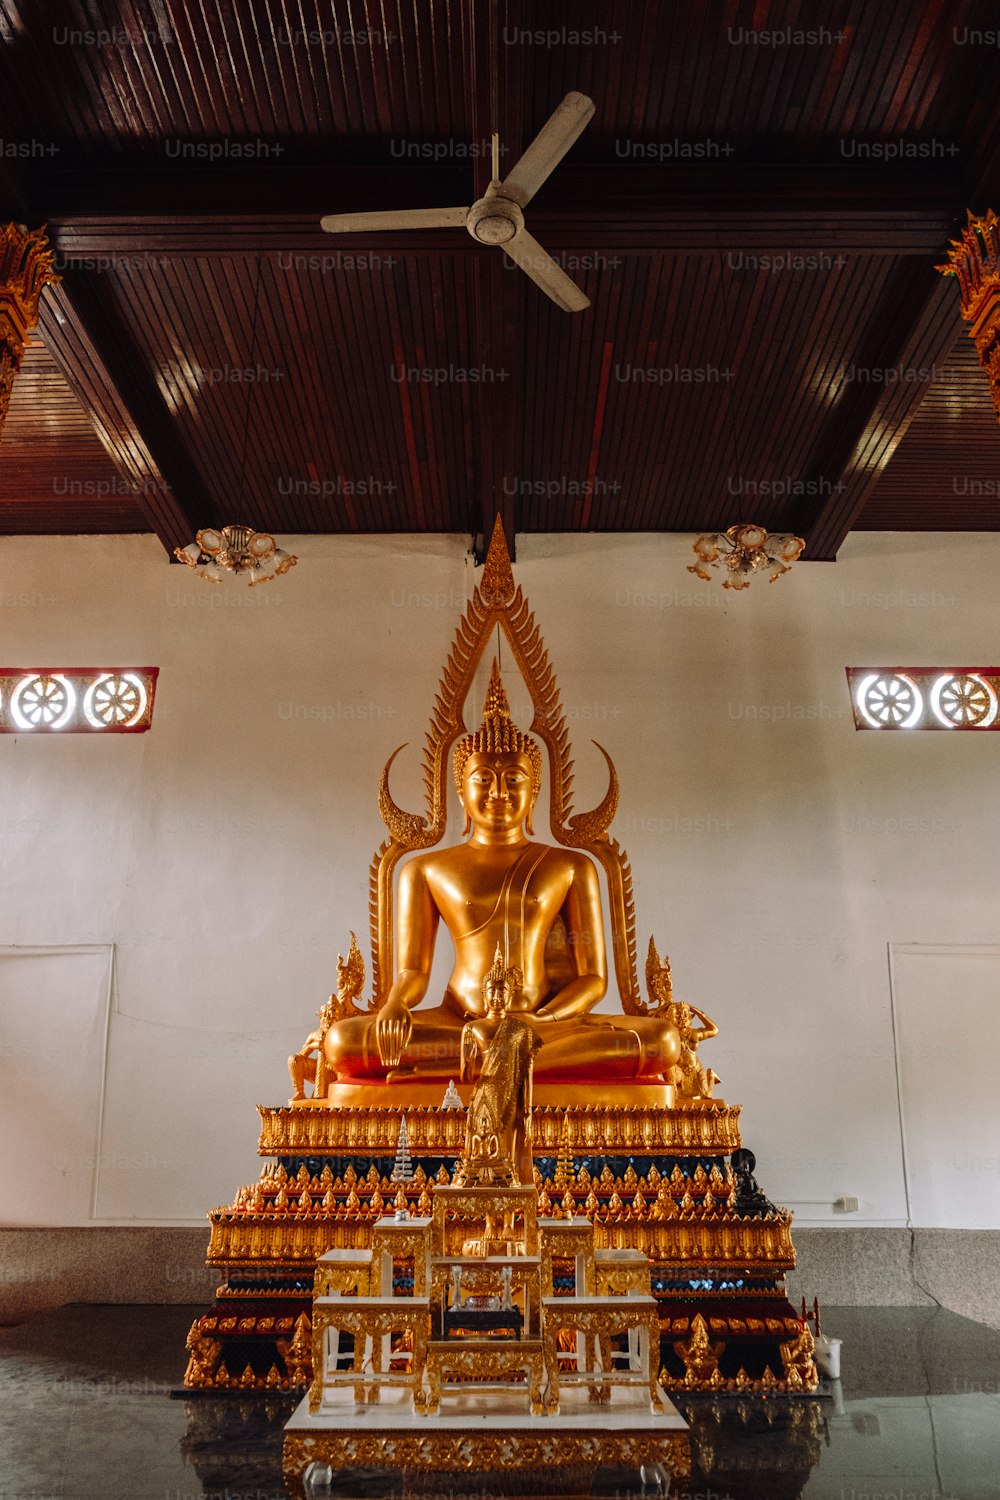 Eine große goldene Buddha-Statue sitzt in einem Raum